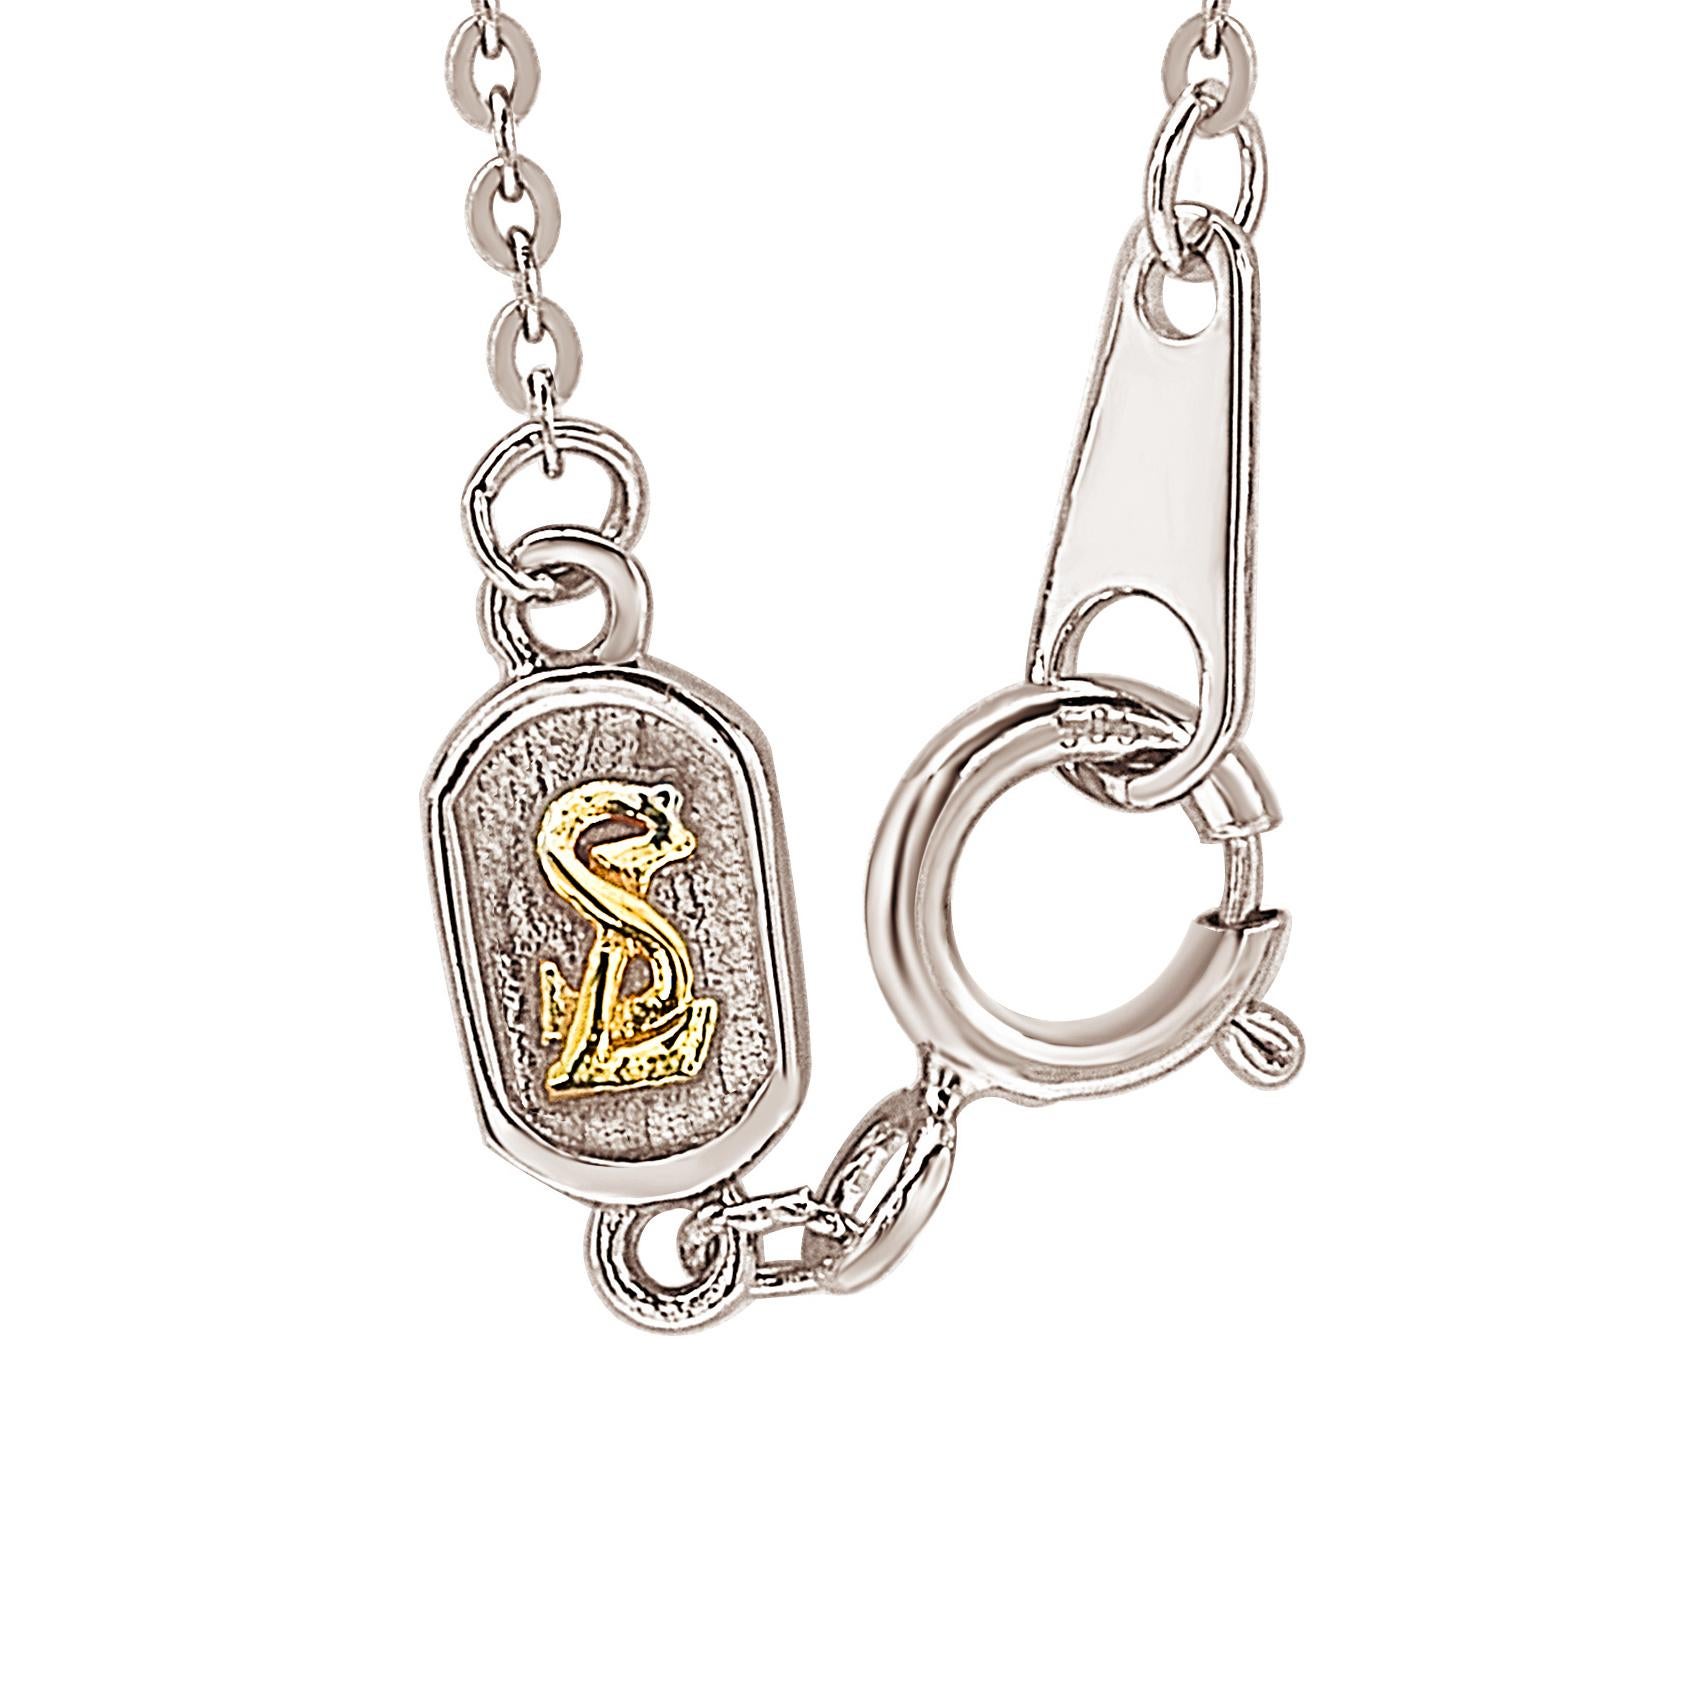 Cet époustouflant collier de lettres personnalisé de Suzy Levian est orné de diamants naturels, sertis à la main dans de l'or blanc 14 carats. C'est le cadeau individuel parfait pour faire savoir à quelqu'un de spécial que vous pensez à lui. Chaque